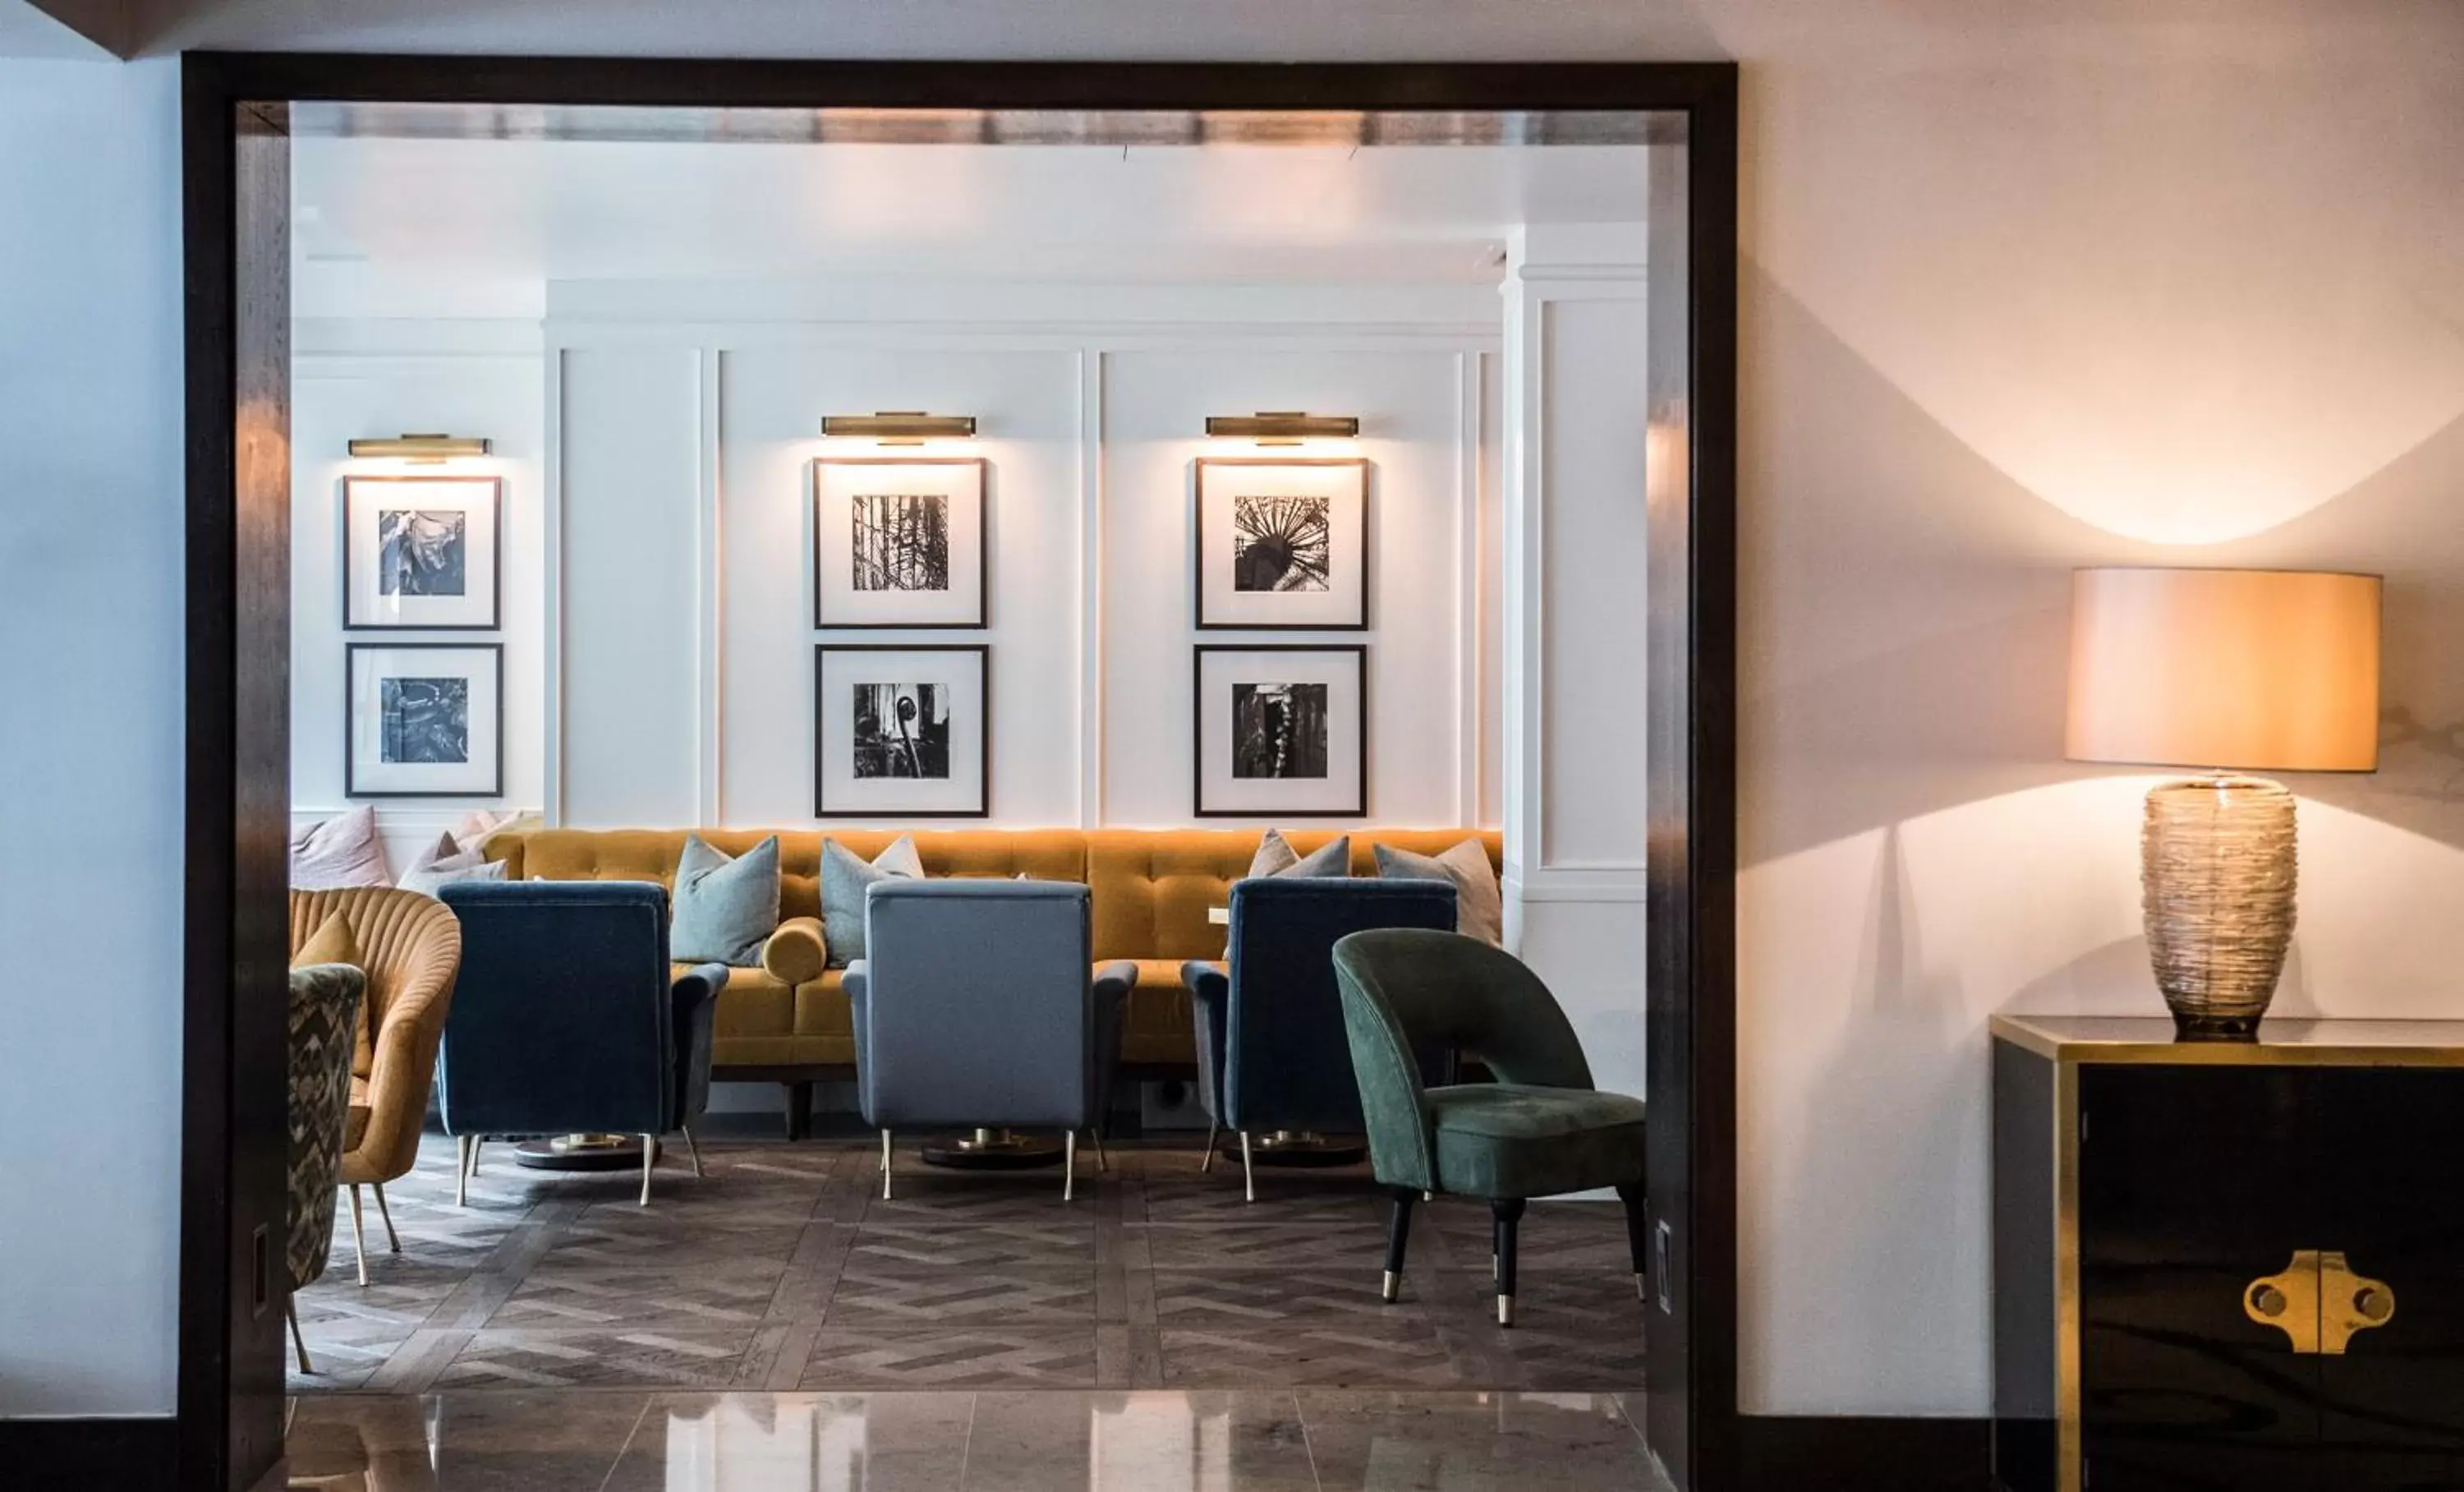 Lobby or reception in The Marylebone Hotel